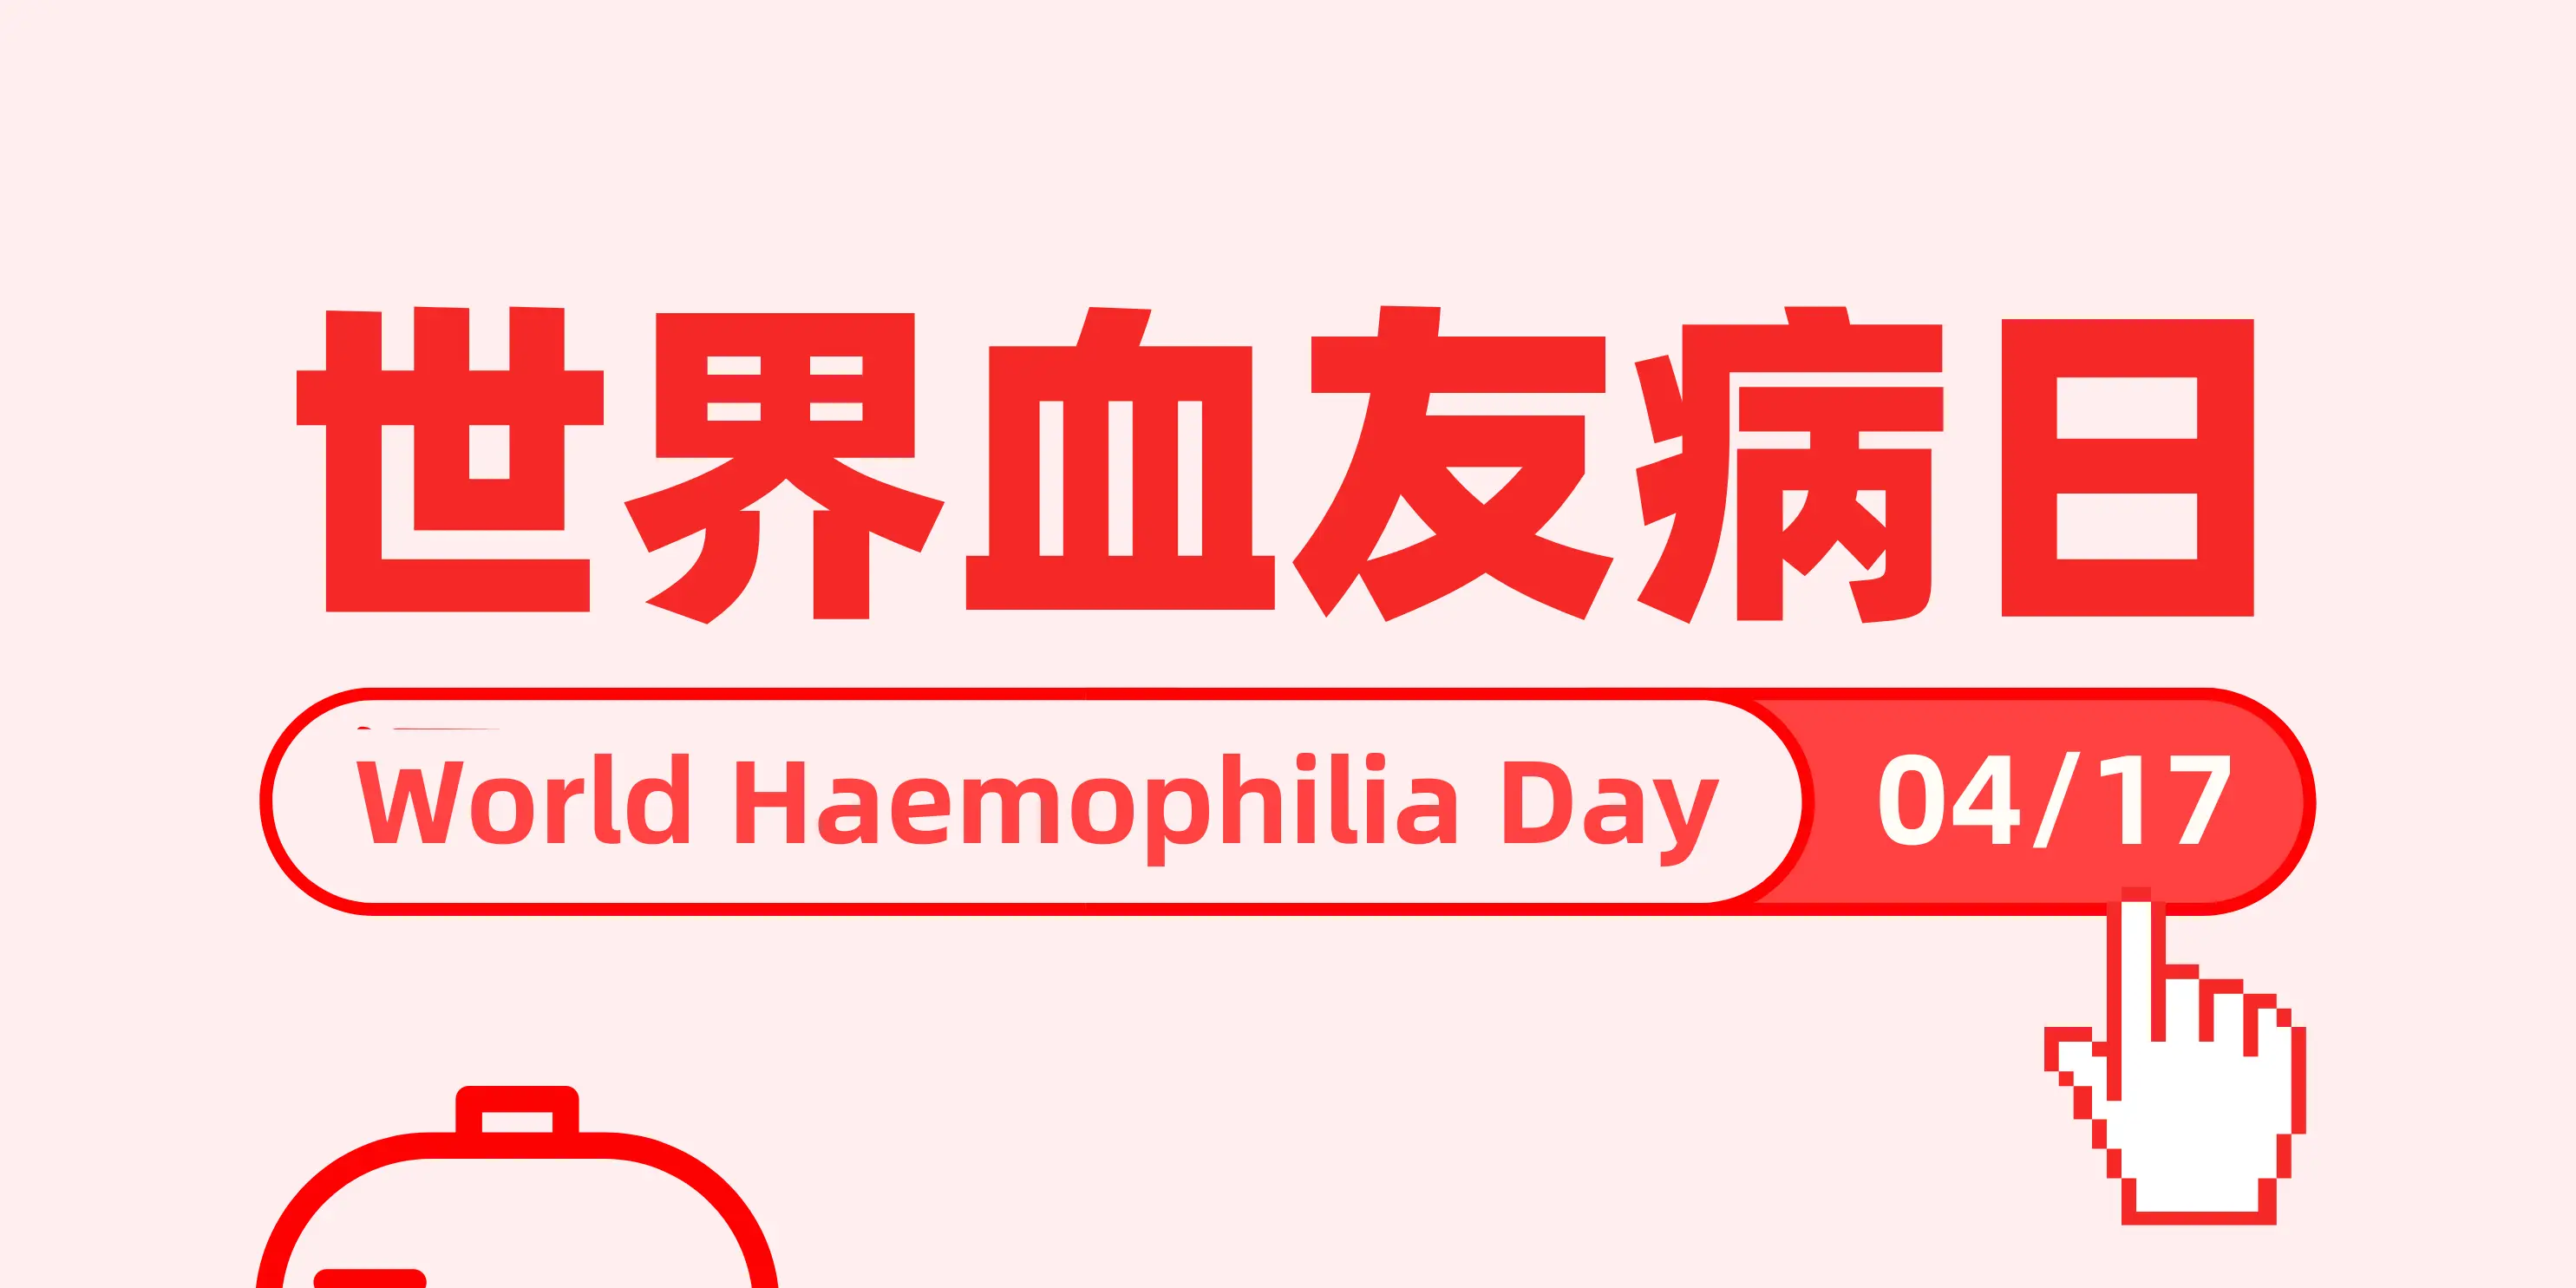 World Hemophilia Day ： Raise Awareness of Bleeding Disorders